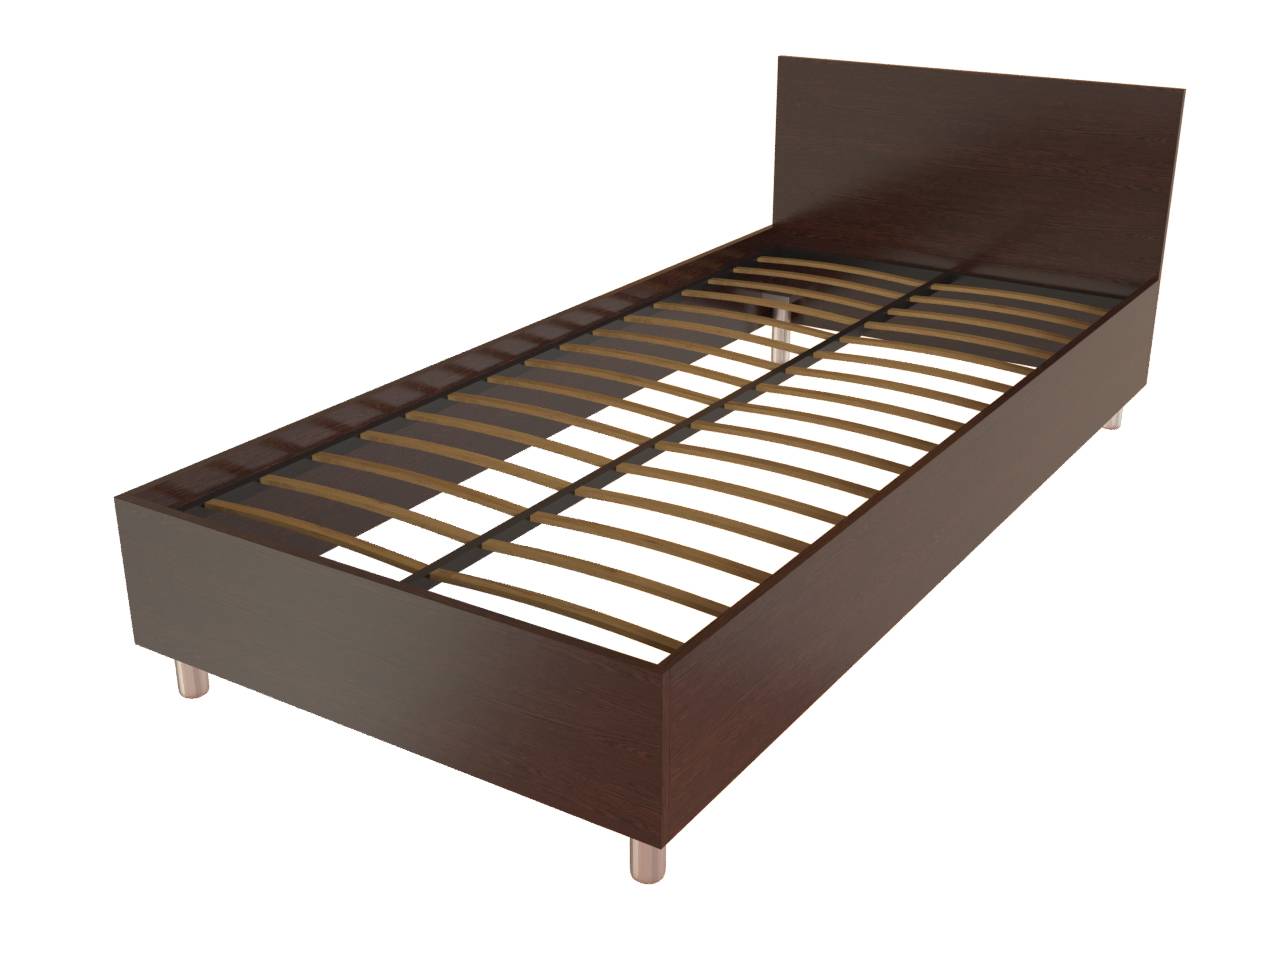 Кровать — Т-401/200х90 (2040х950х750 мм) односпальная для гостиниц